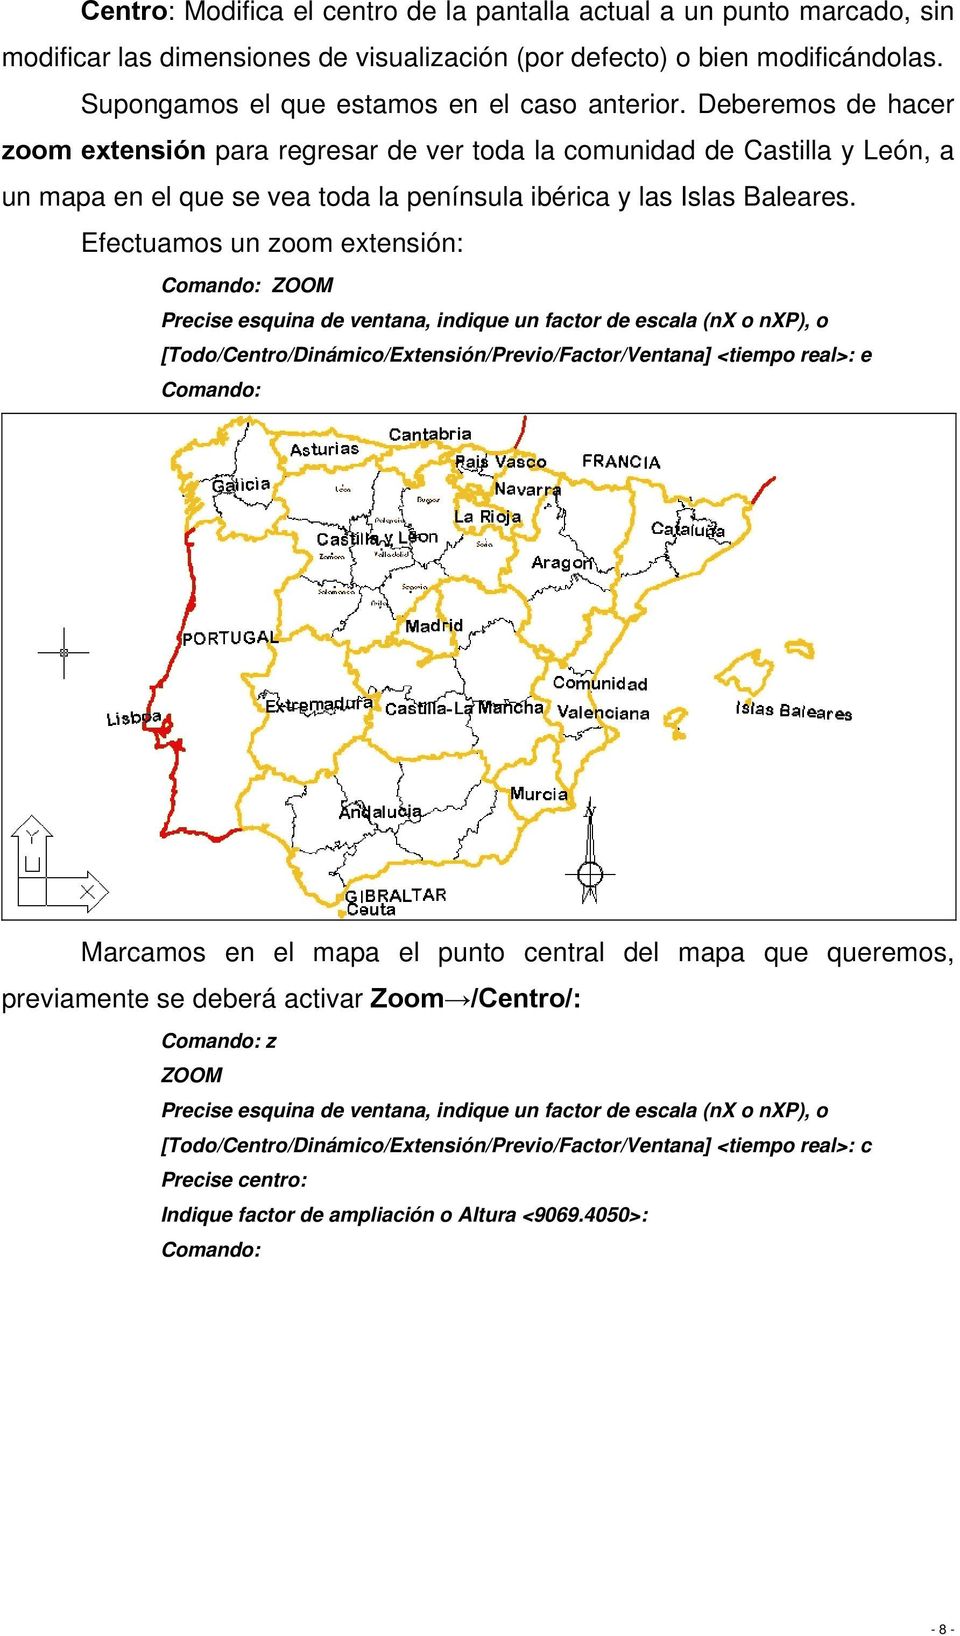 Deberemos de hacer zoom extensión para regresar de ver toda la comunidad de Castilla y León, a un mapa en el que se vea toda la península ibérica y las Islas Baleares.